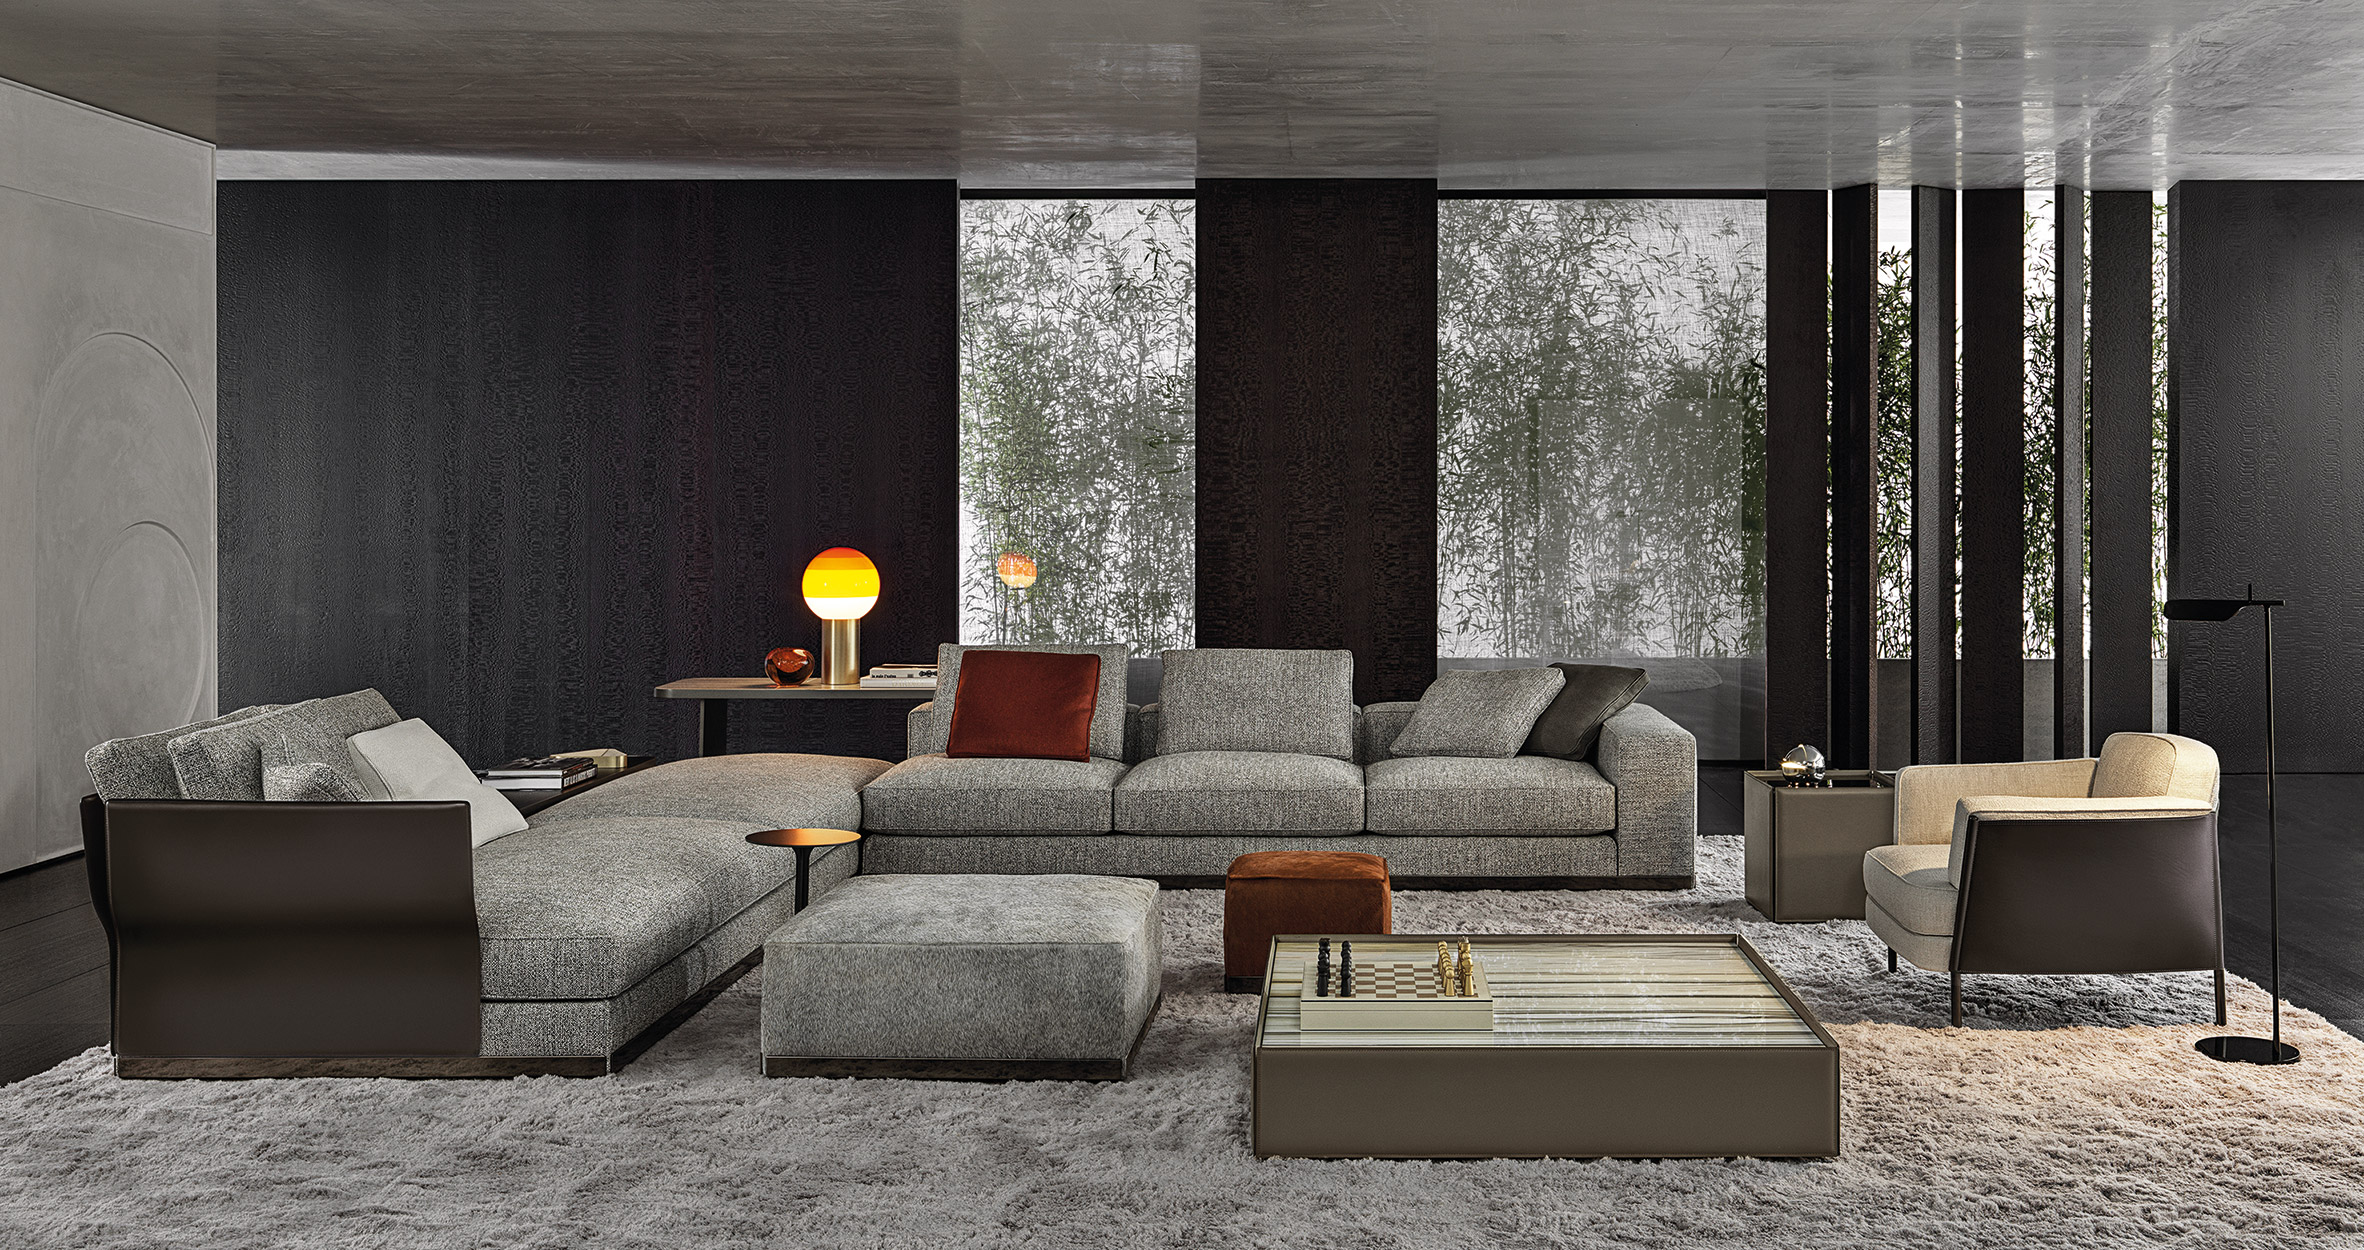 Furniture Collection At Milan Design Week